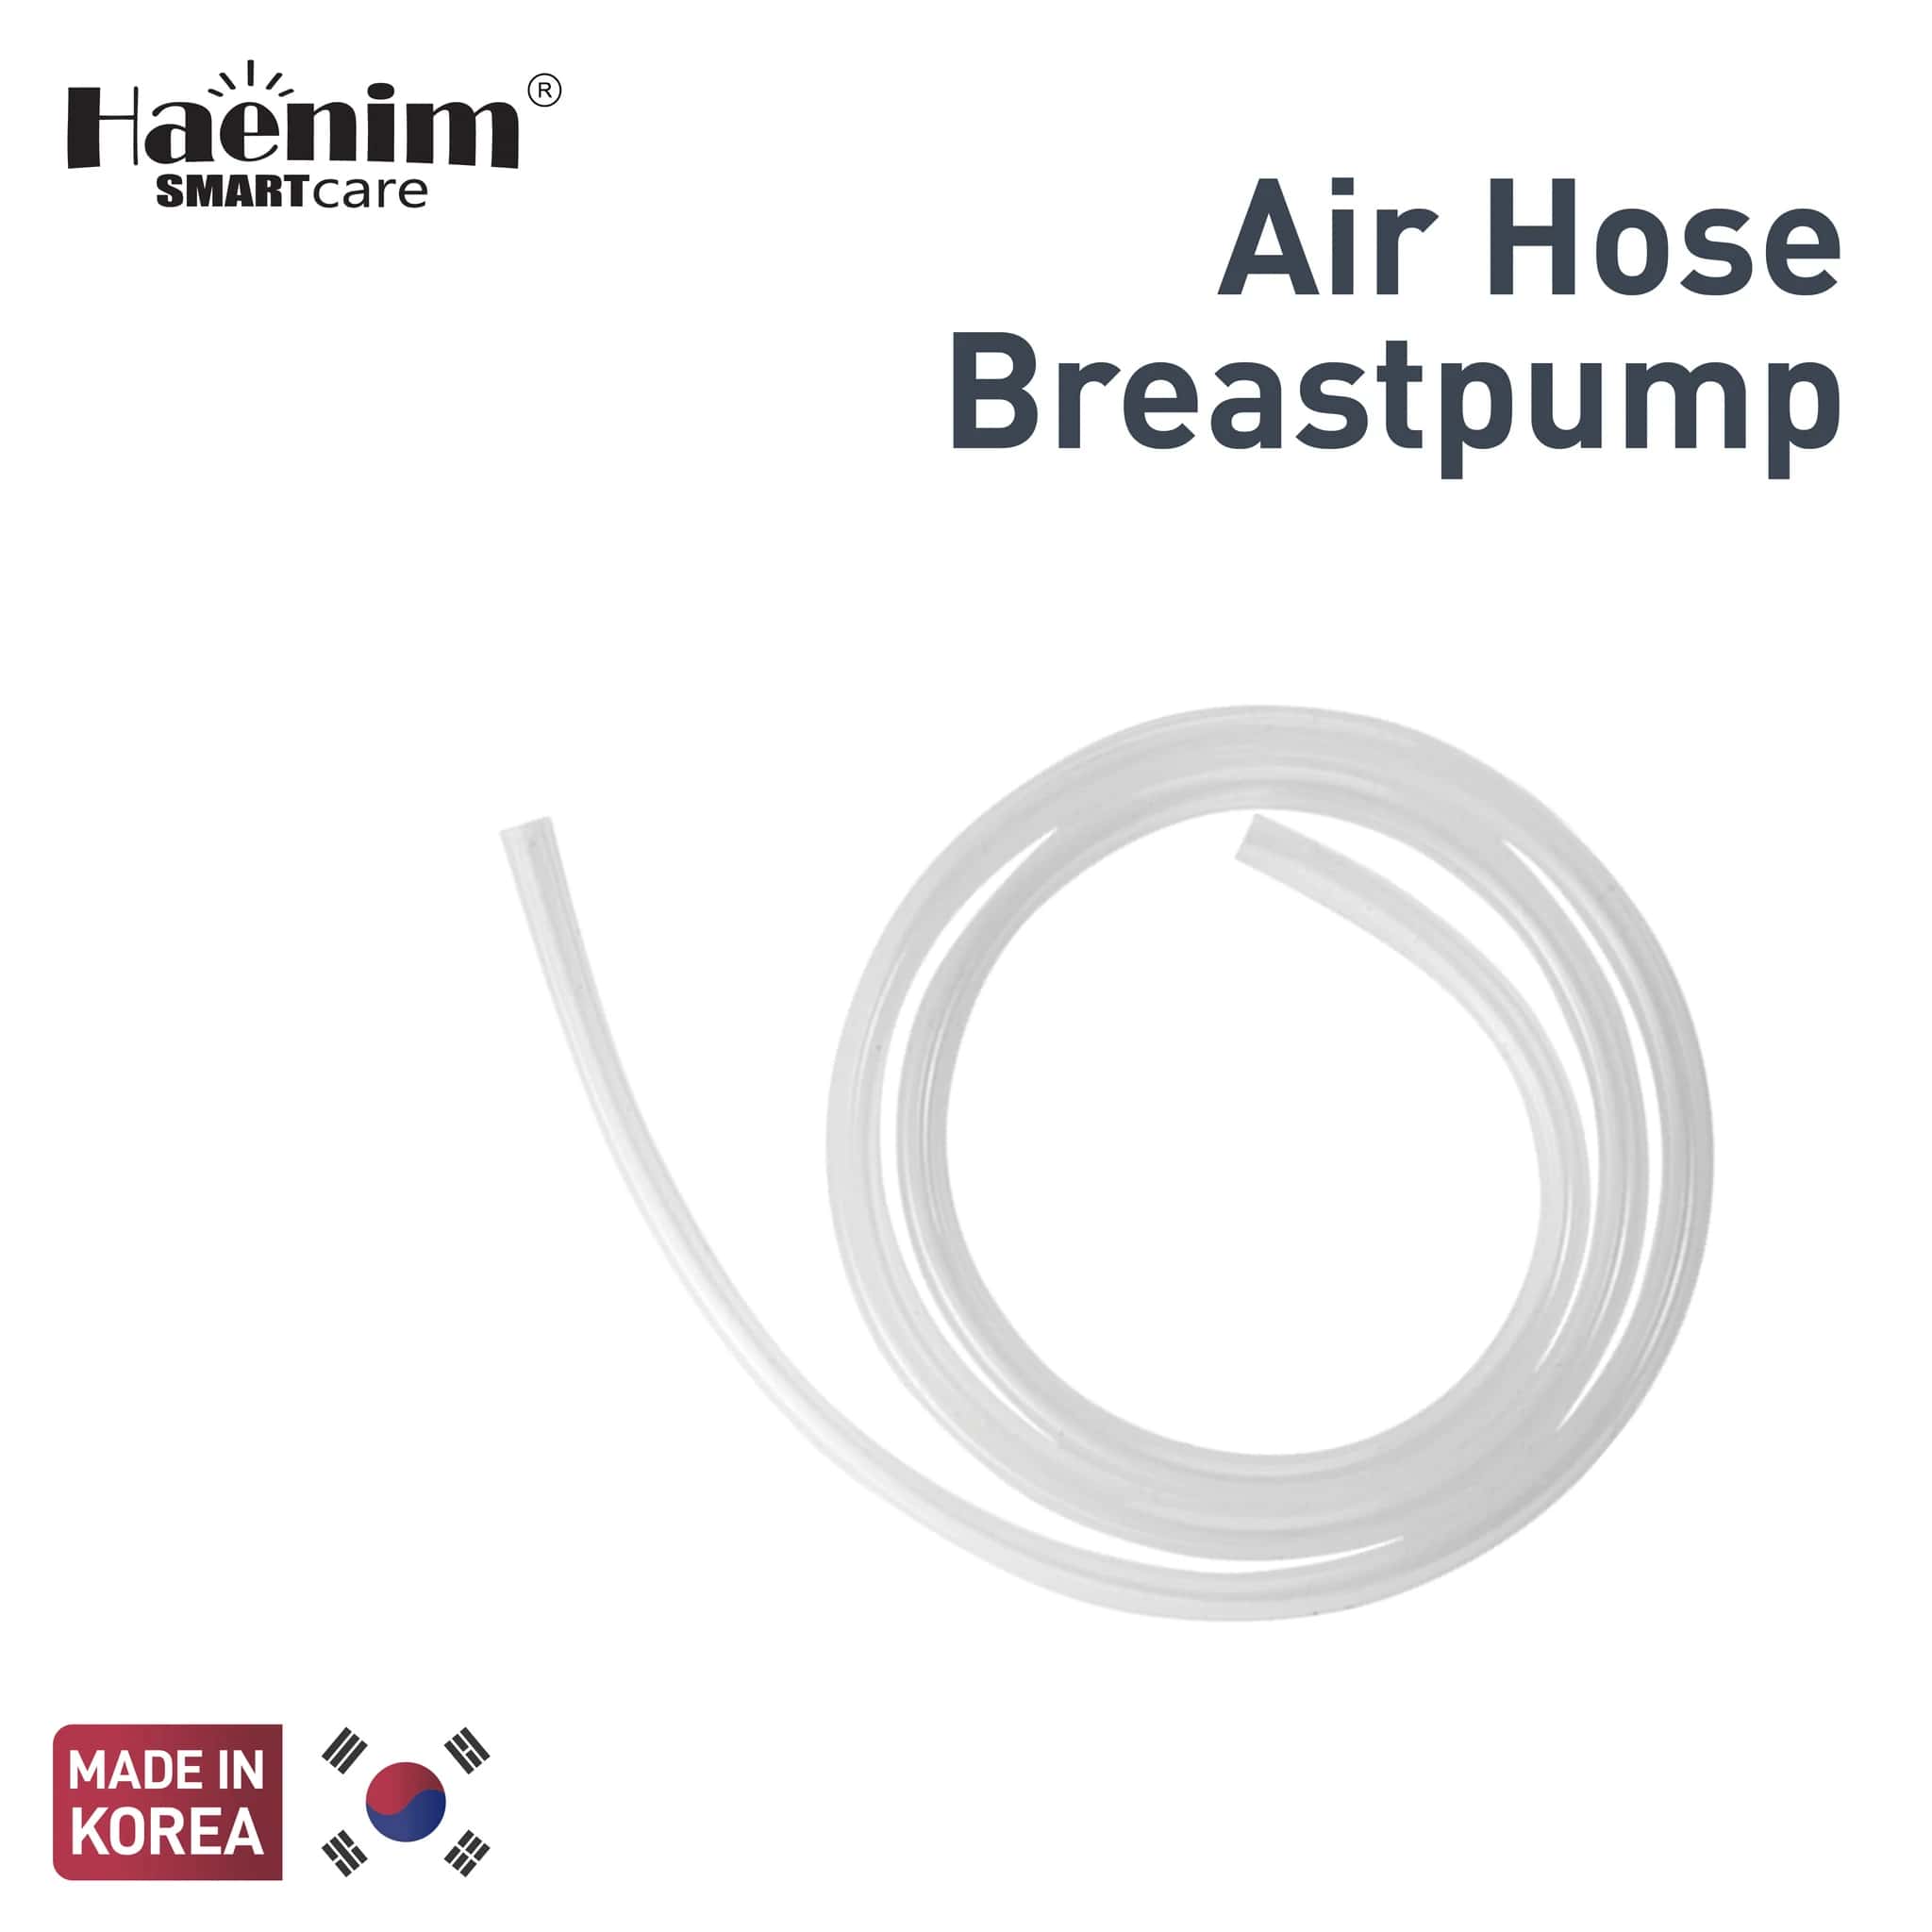 Haenim Air Hose Breastpump (Tubing)